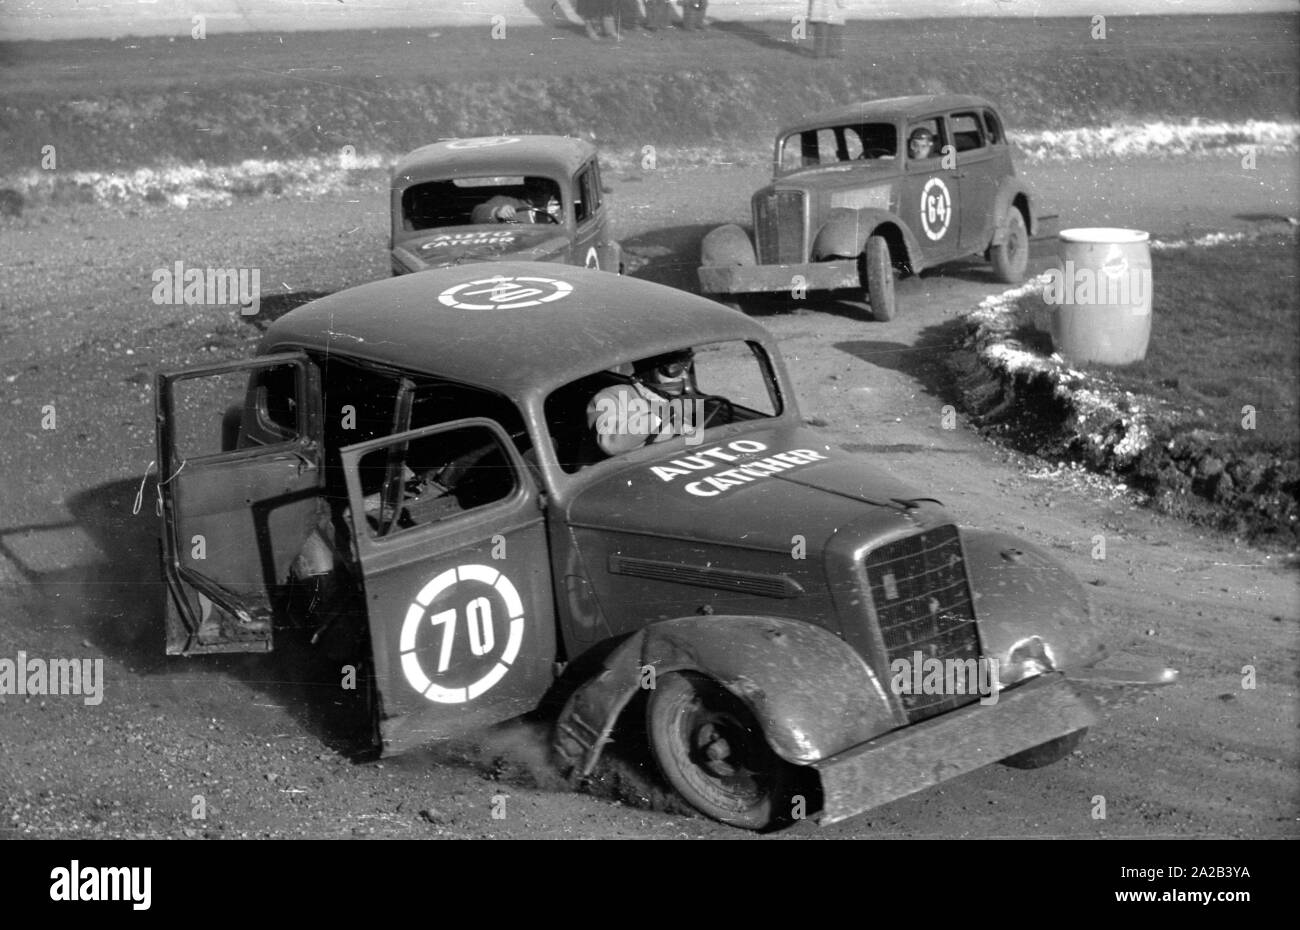 En 1954 una carrera de autos se celebró en Munich Amor-Bahn (en realidad un  ciclo vía). La foto muestra a los participantes durante la carrera, sus  números fueron rociados sobre los coches.